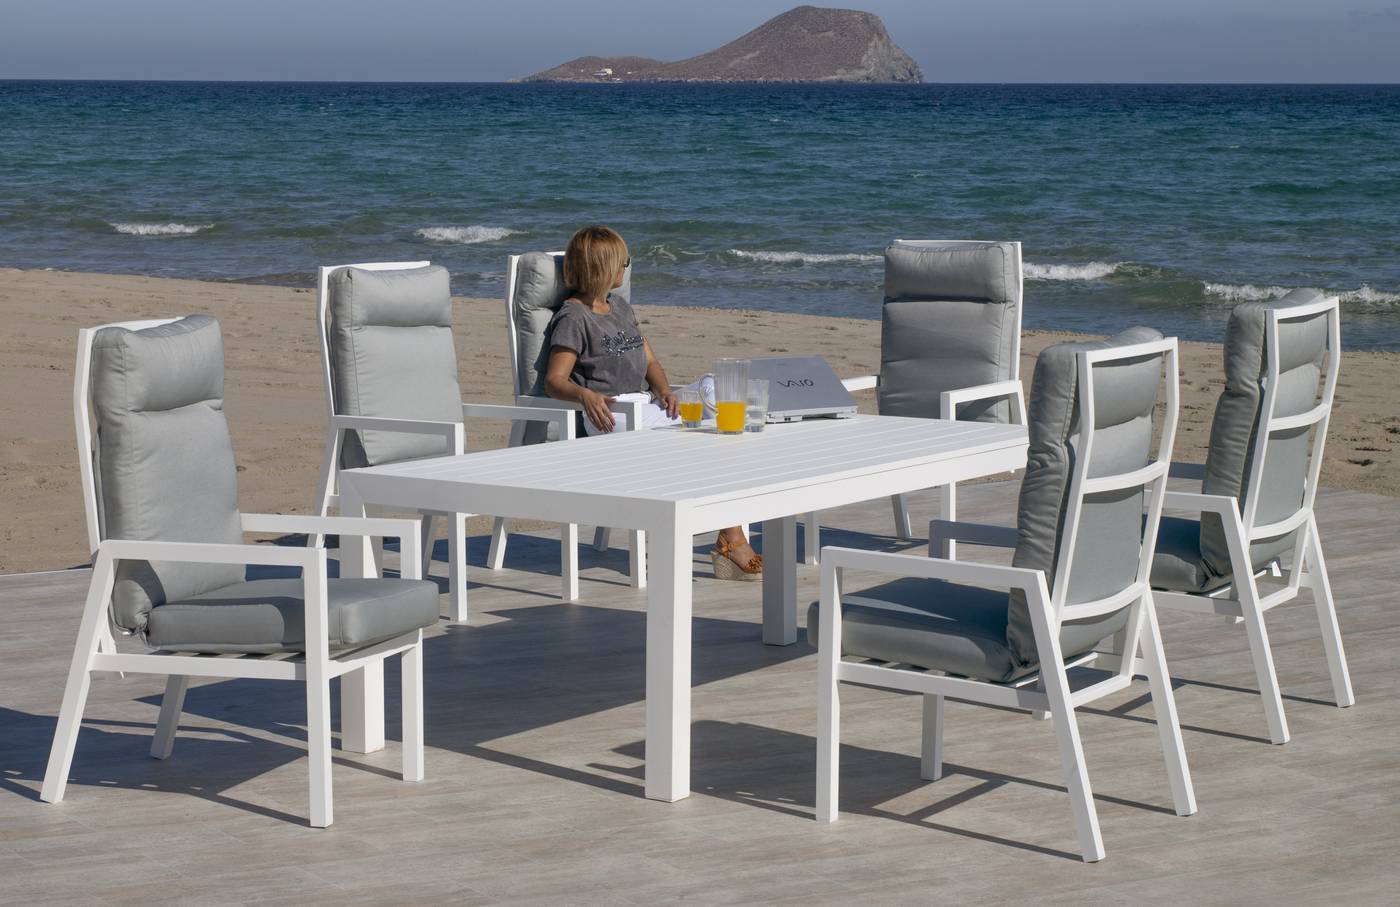 Sillón Aluminio Banly-3 - Lujoso sillón de comedor con cojín confort completo, para jardín. Colores: blanco, antracita o champagne.